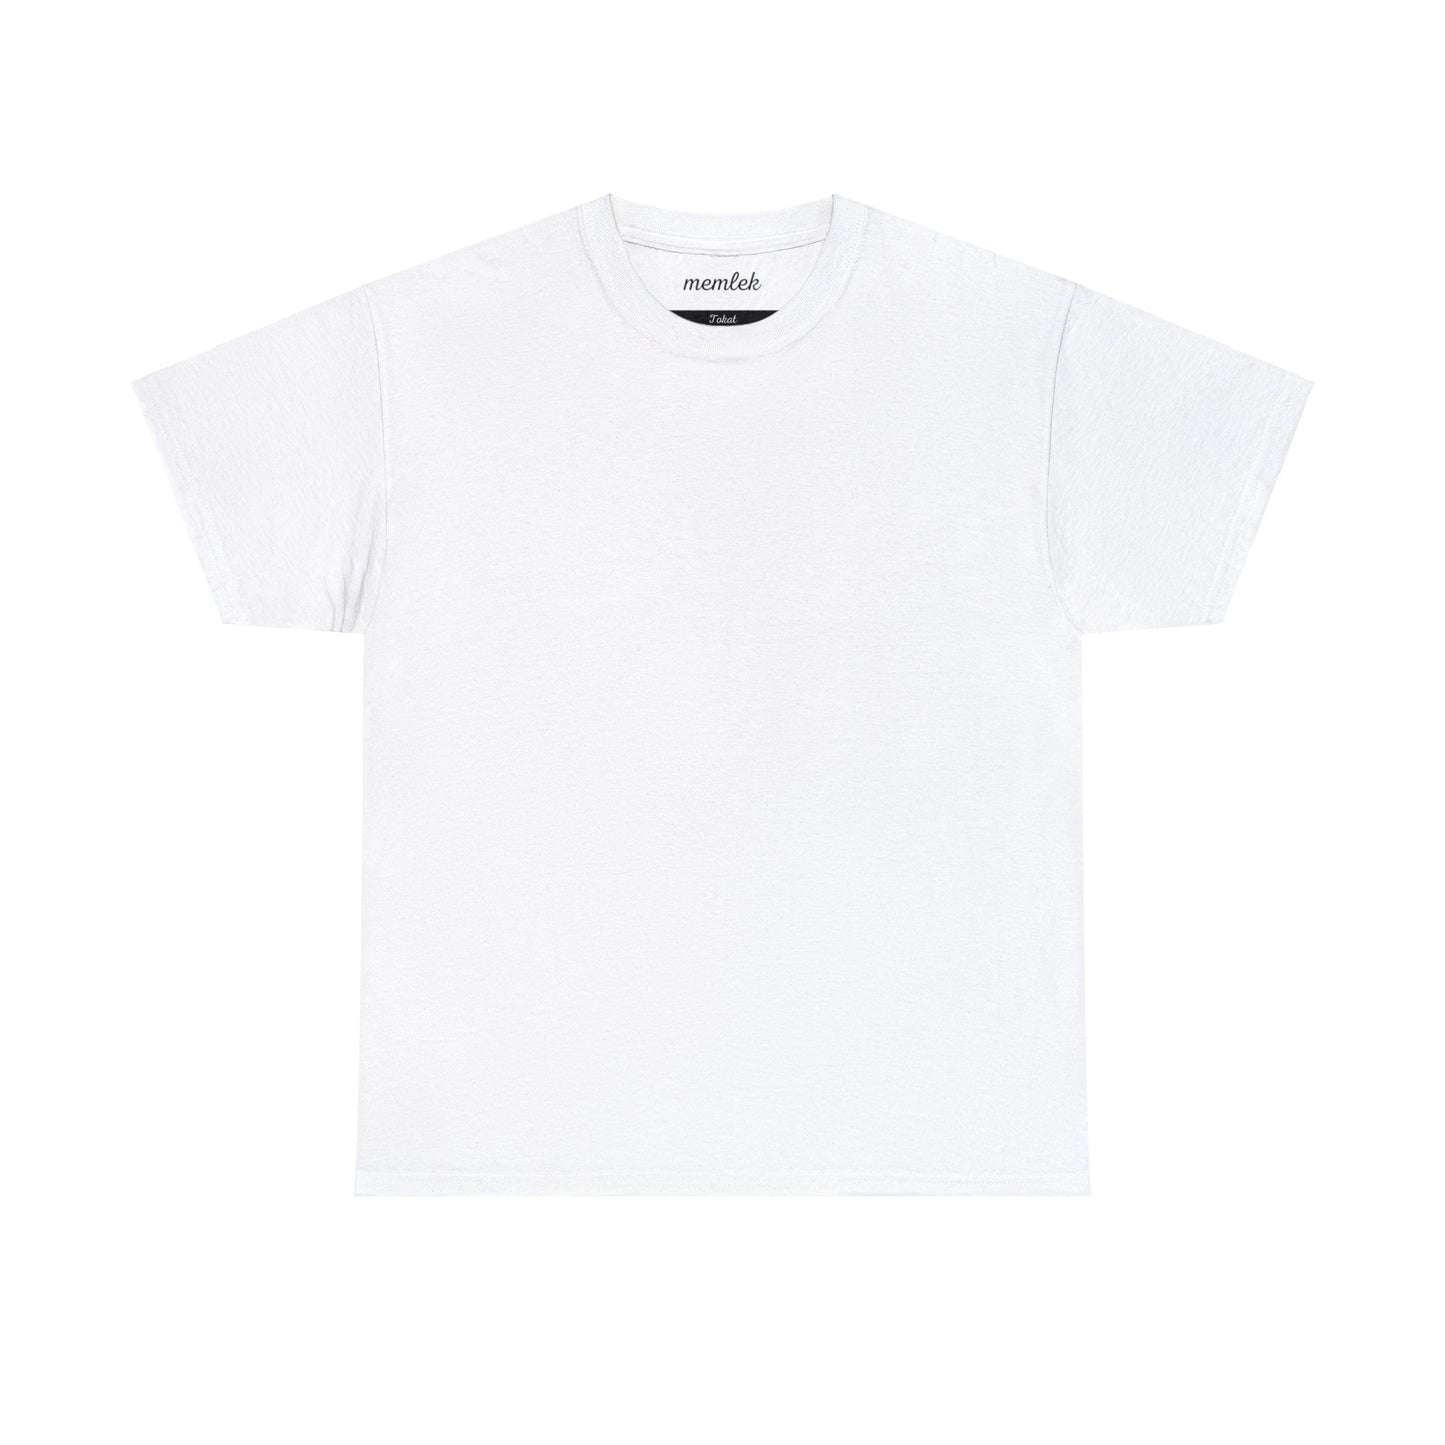 Kurt - 60 Tokat - T-Shirt - Back Print - Black/White